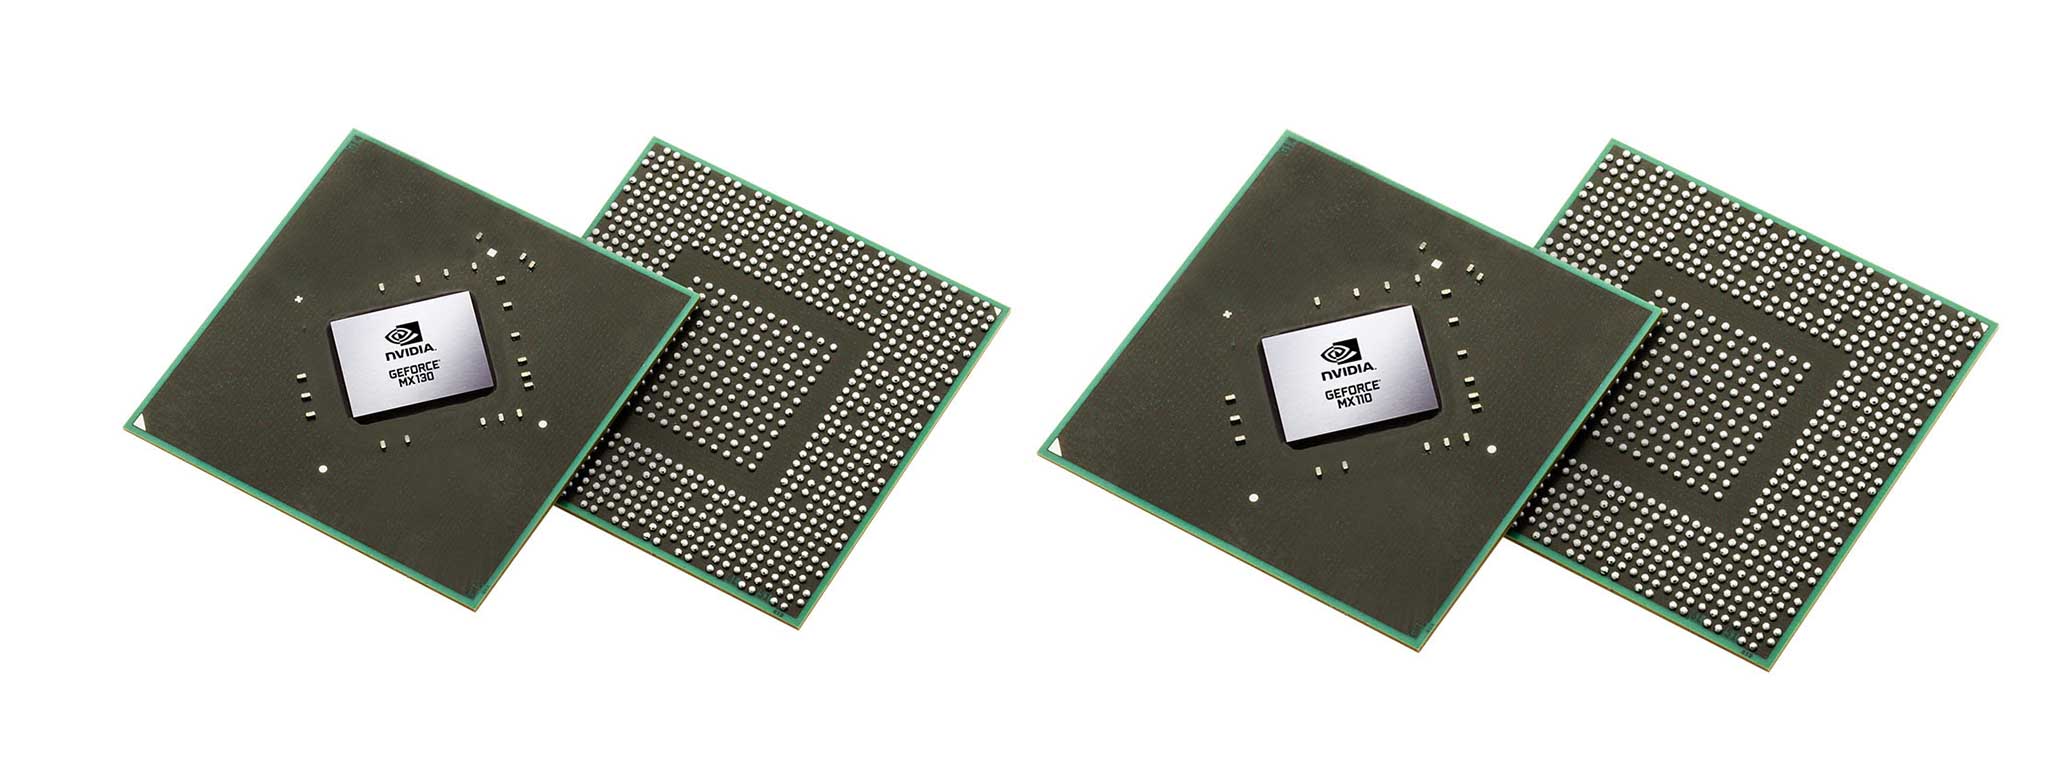 Nvidia ra mắt bộ xử lý đồ hoạ MX130 và MX110 dành cho laptop